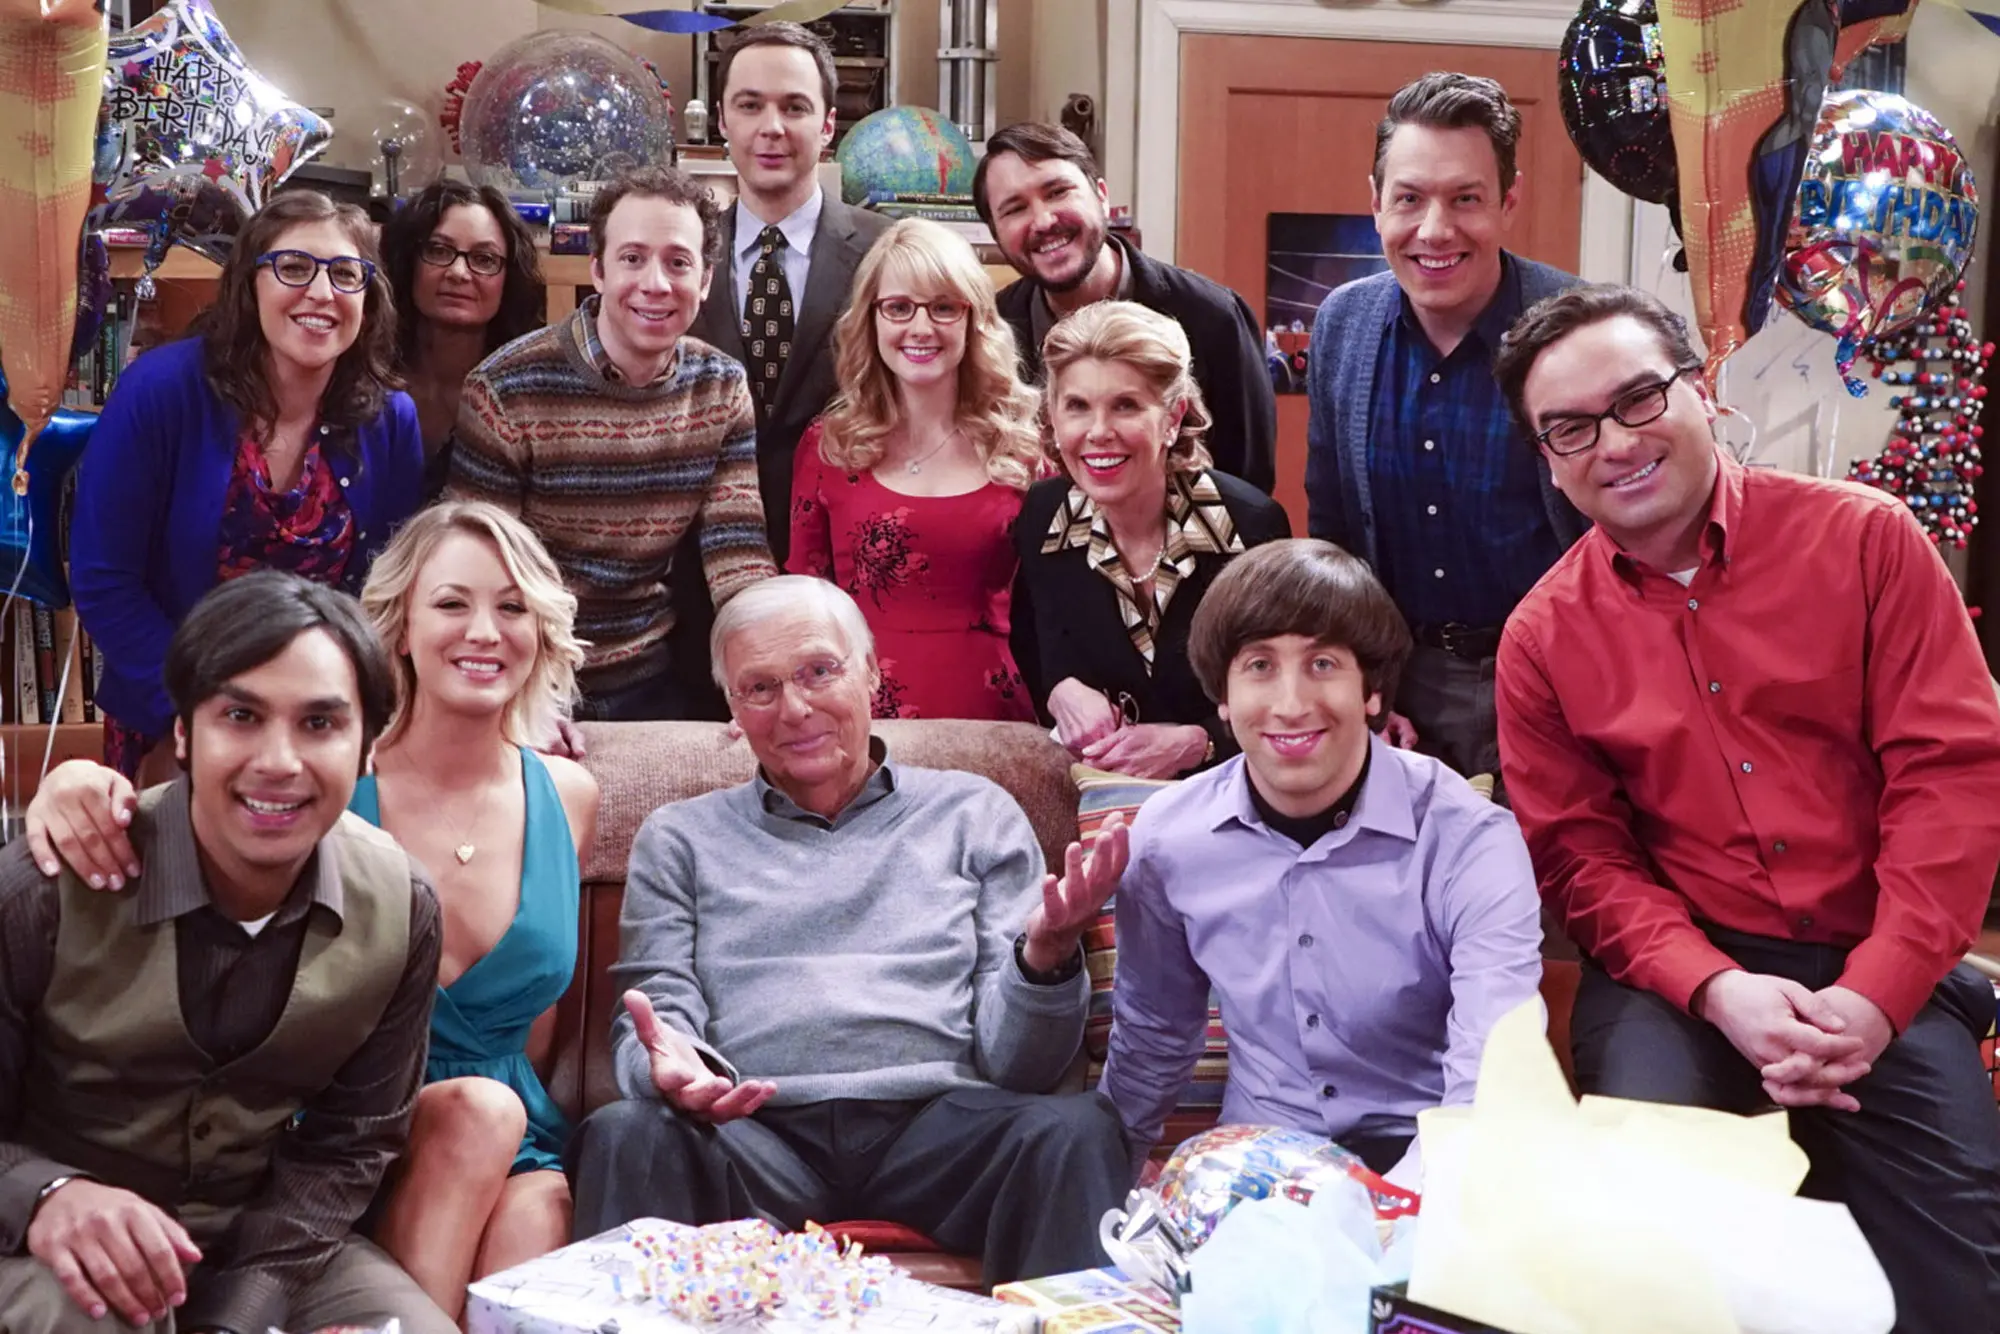 Os Bastidores de The Big Bang Theory: Segredos do Set de Gravação